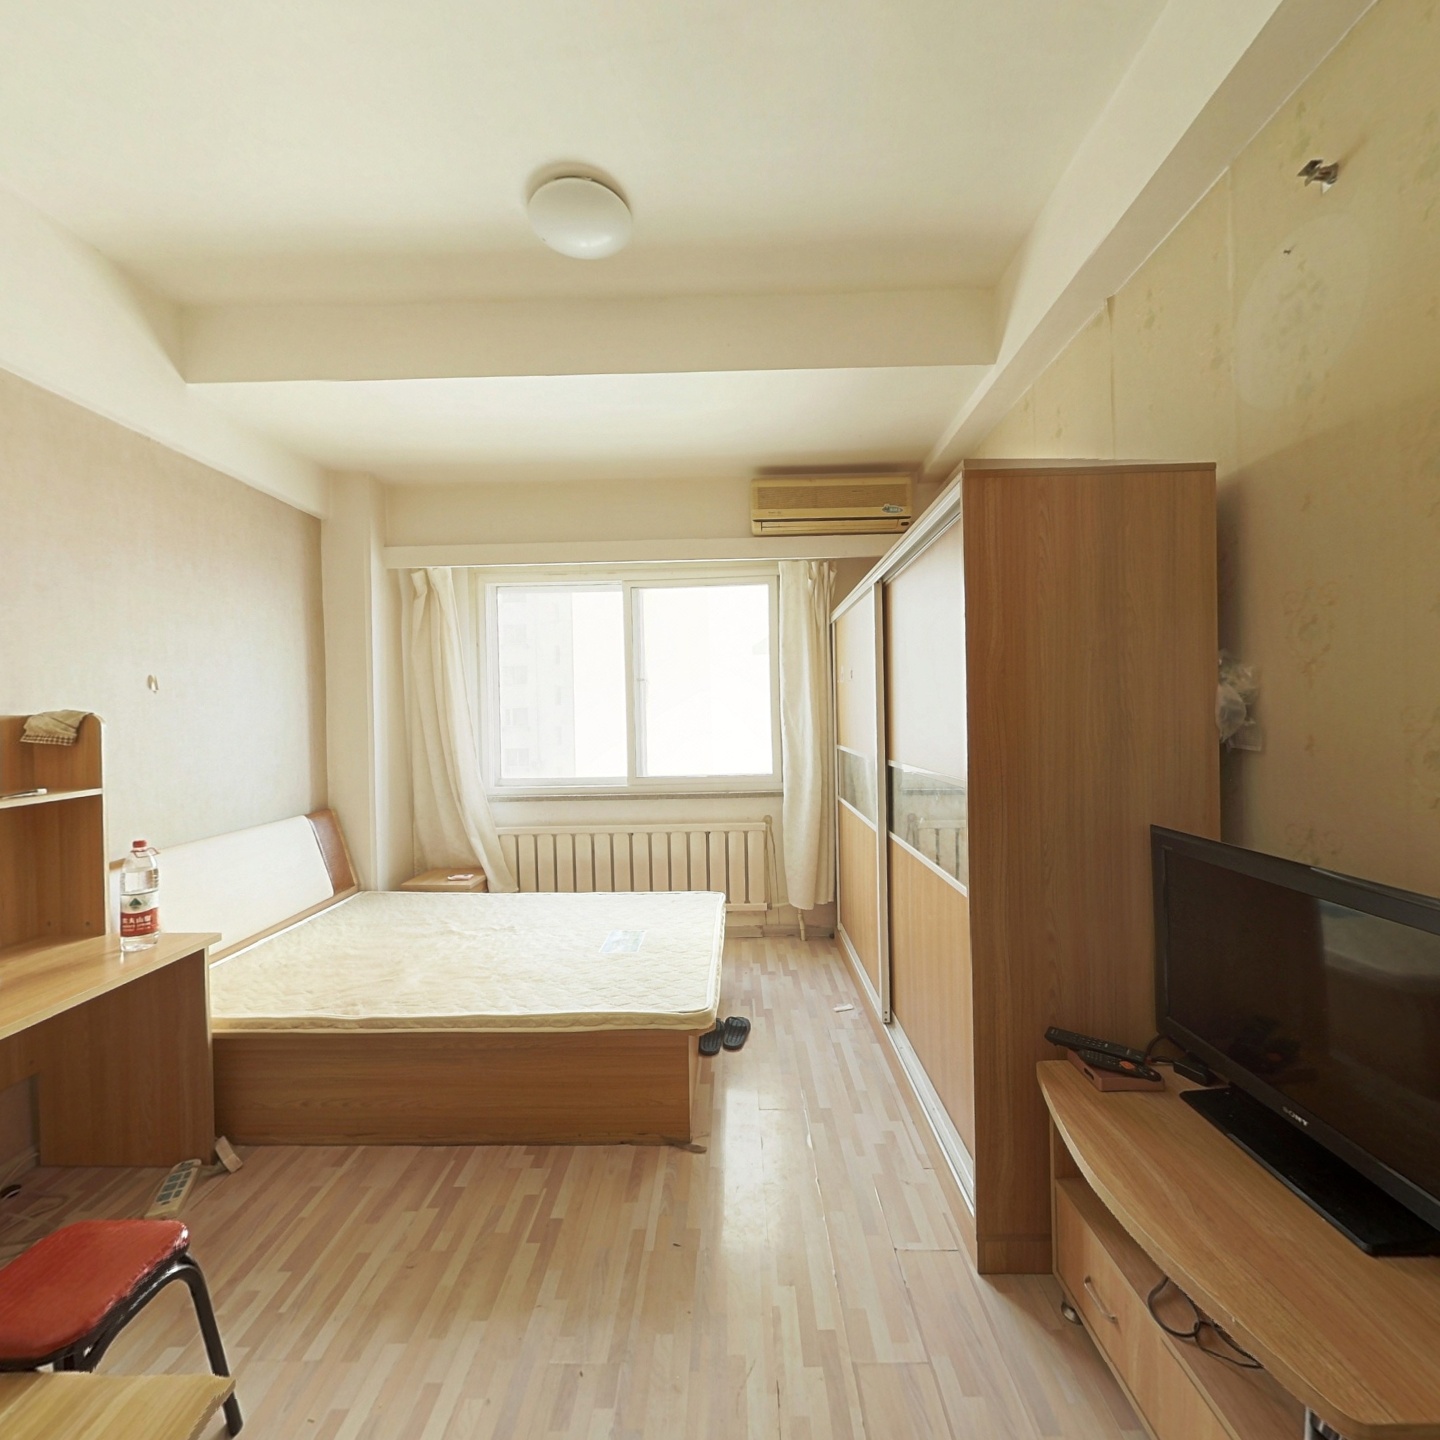 新东方公寓 一室一厅总房款低 靠 近万达商圈